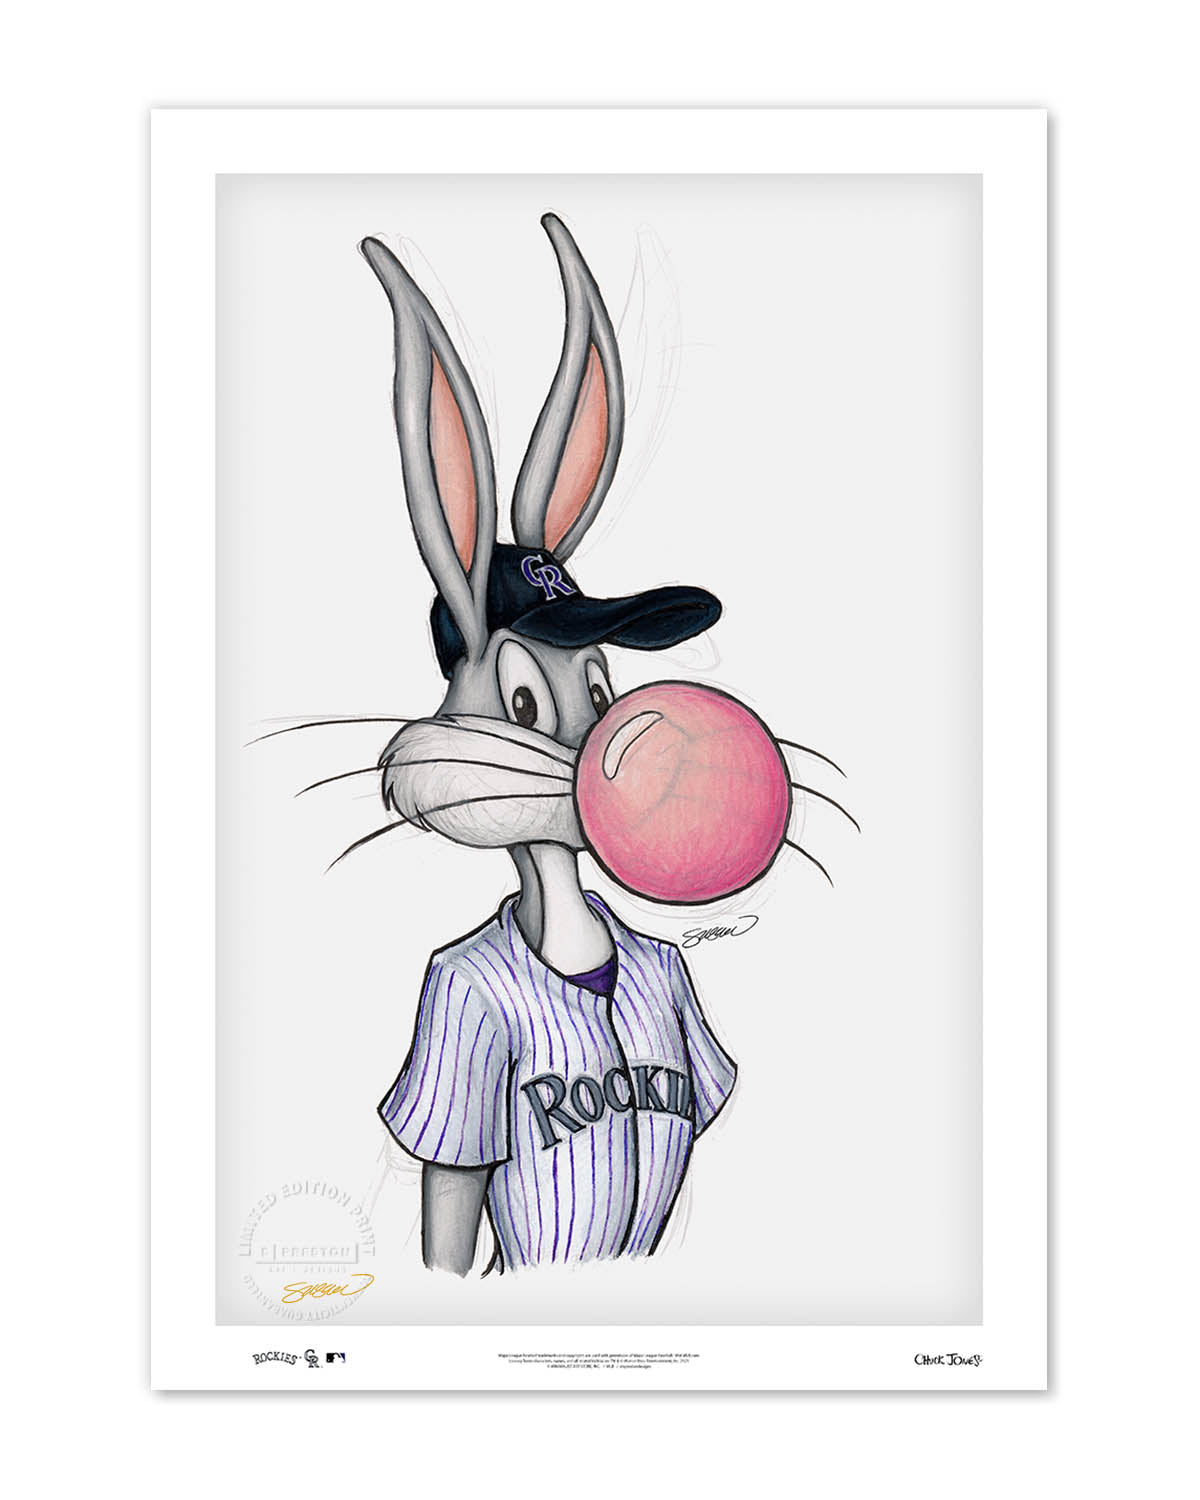 Bubblegum Bugs x MLB Rockies Limited Edition Fine Art Print